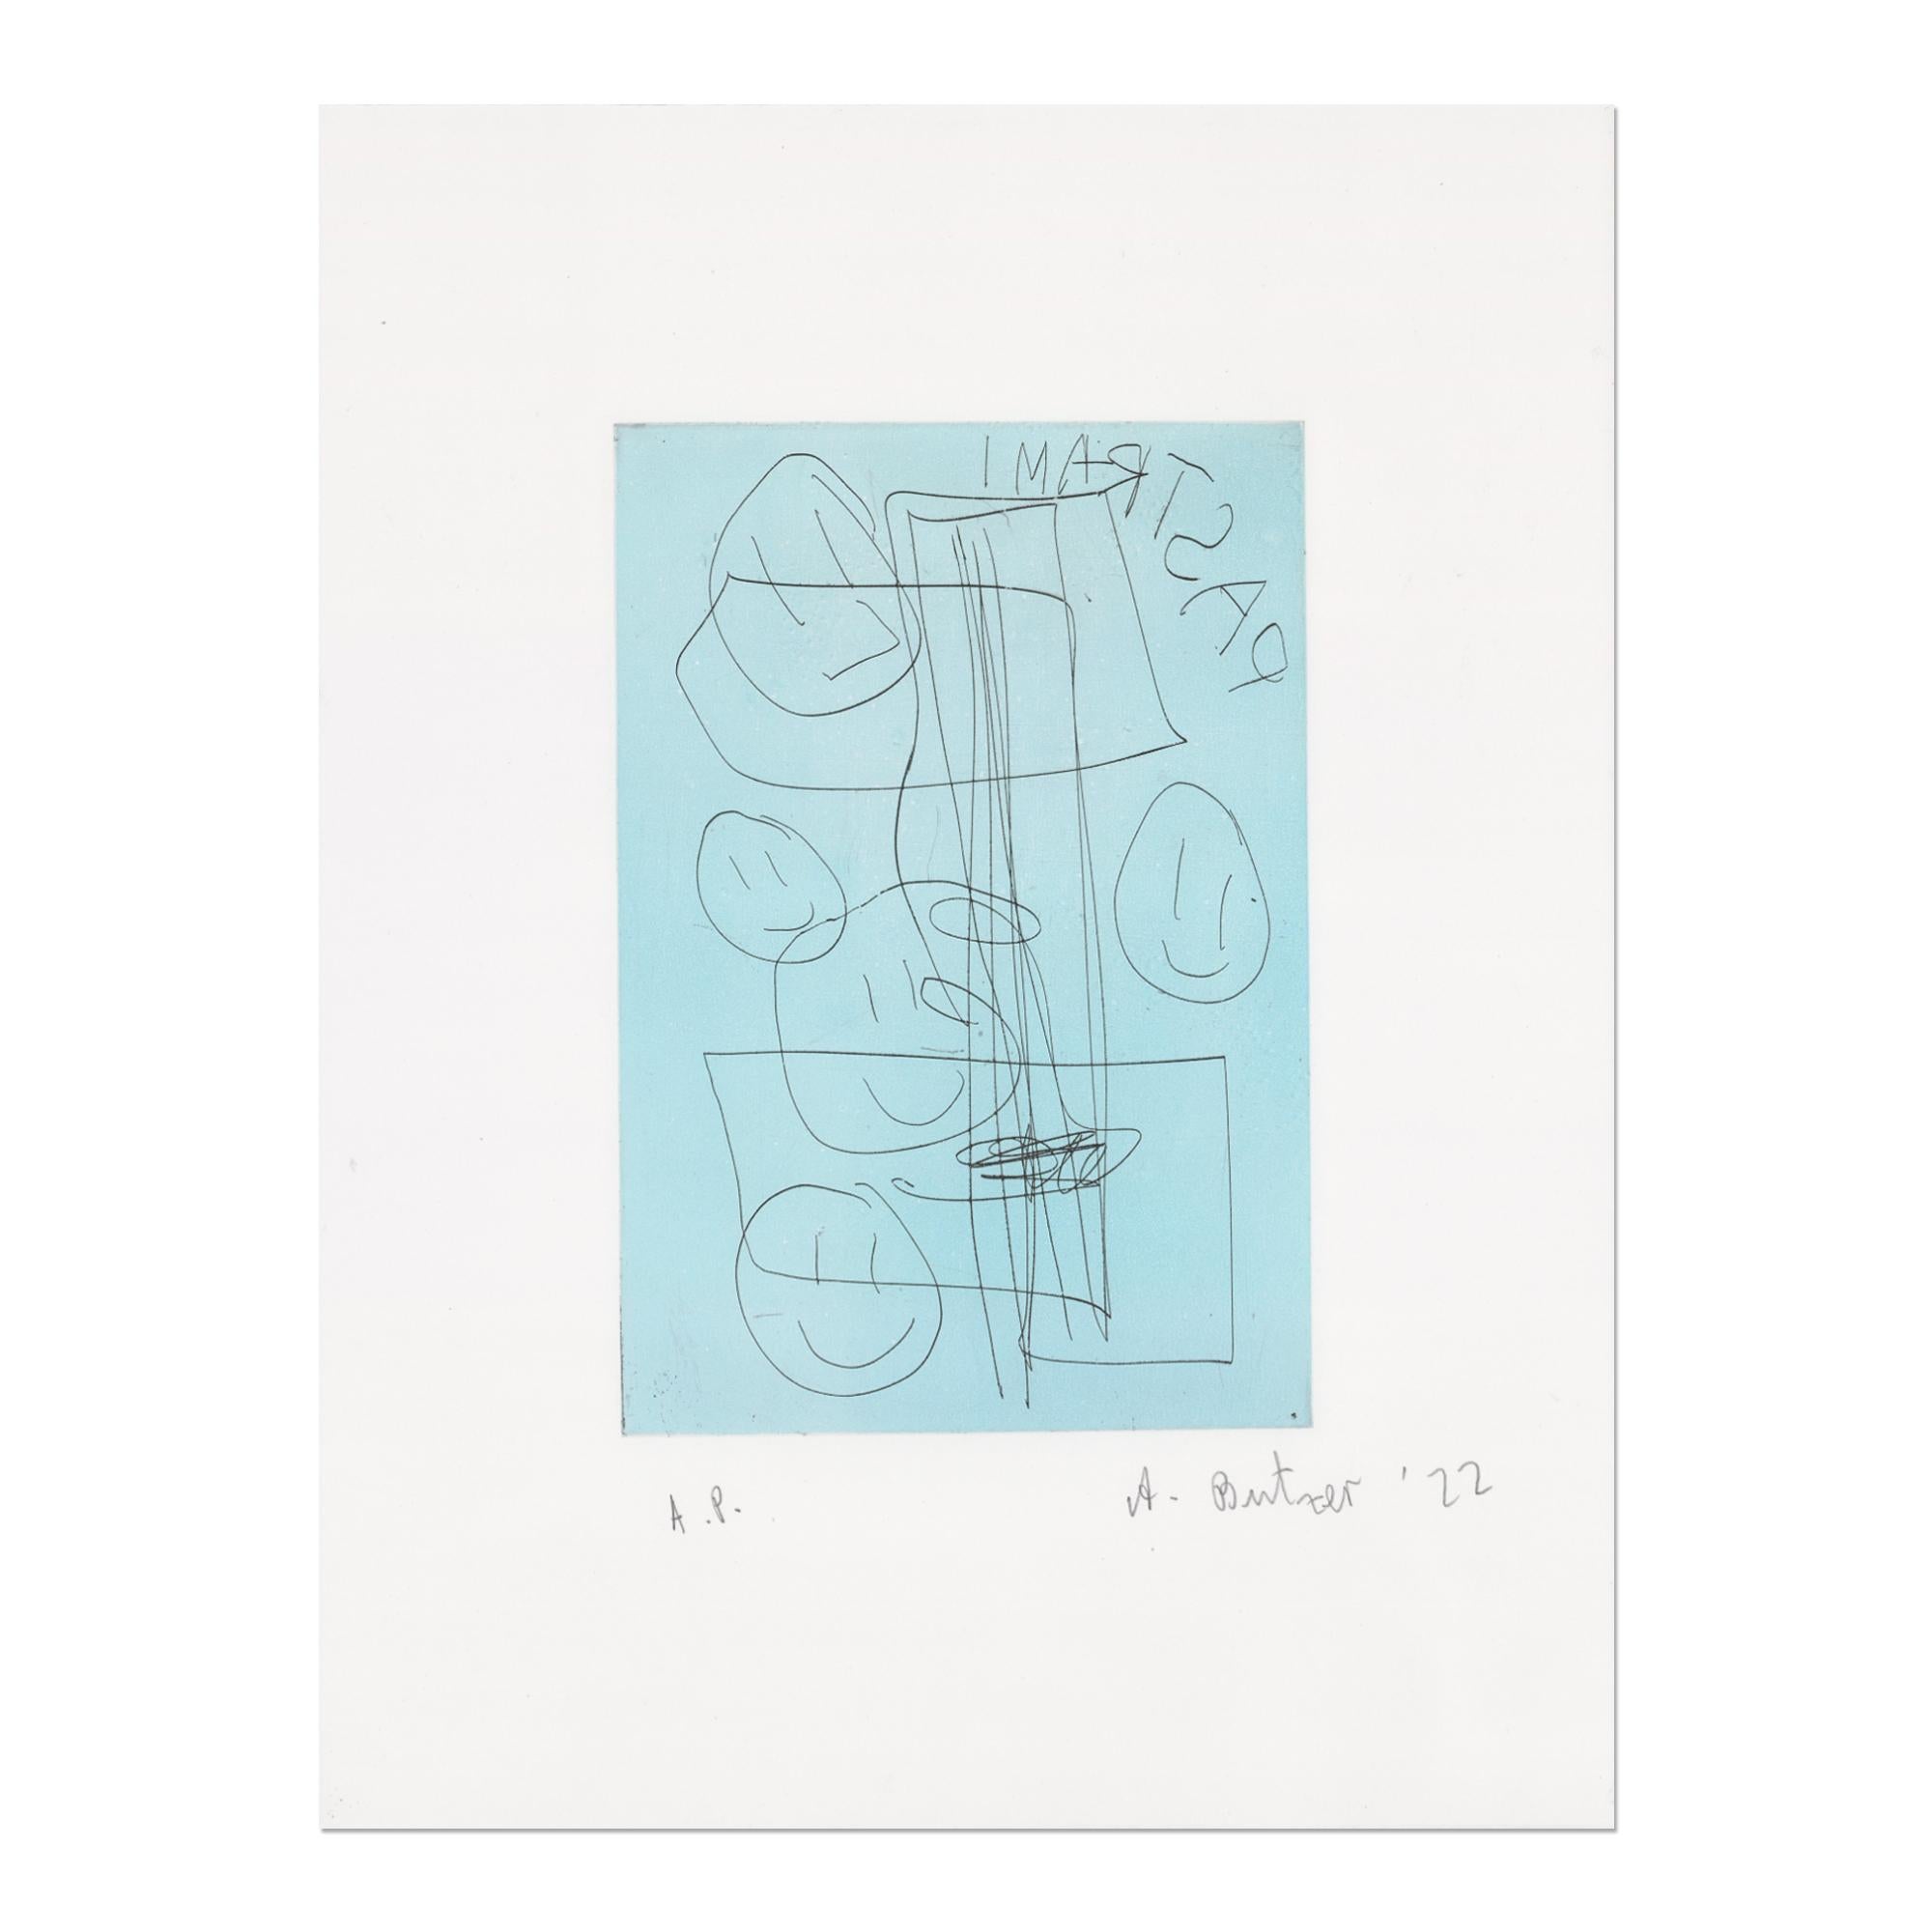 André Butzer (Deutscher, geb. 1973)
Unbetitelt (Pastrami), 2019/2022
Medium: Radierung in Farben auf Velinpapier
Abmessungen: 43 x 33 cm
Auflage 15: handsigniert, nummeriert und datiert in Bleistift